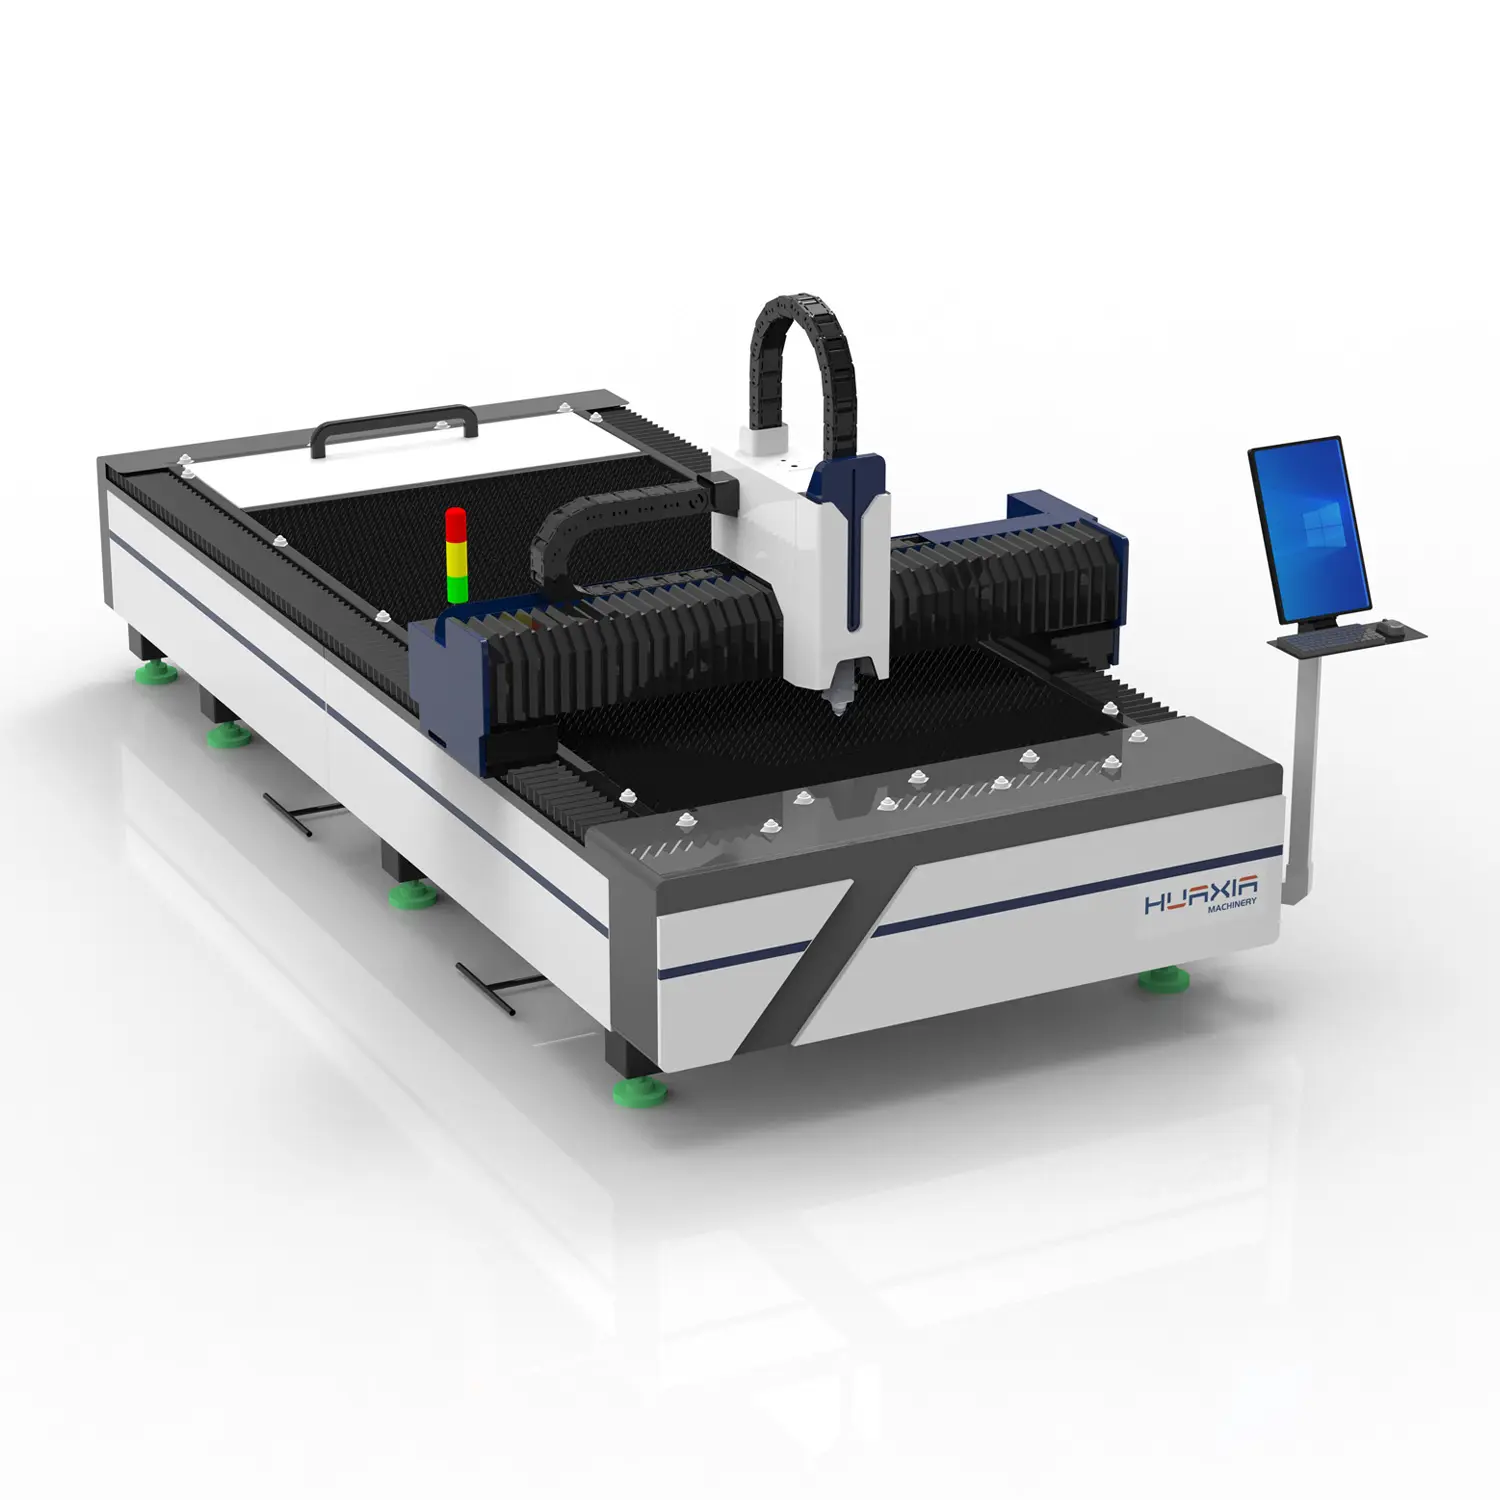 Vendita calda macchina di taglio Laser di alta qualità 1500W/2000W/3000W/6000W made in China può essere considerato affidabile